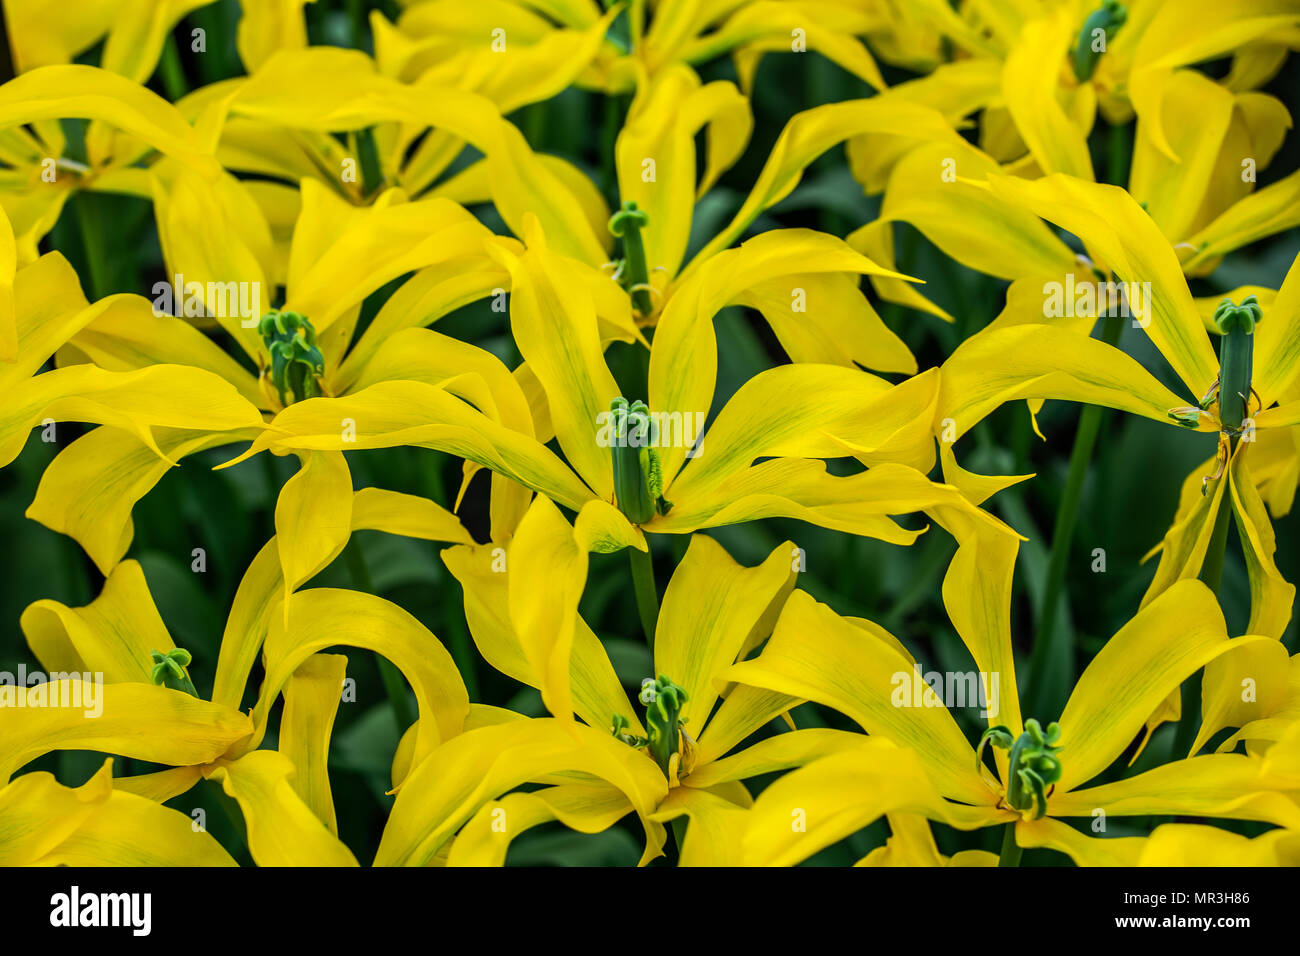 Star yellow tulips Stock Photo